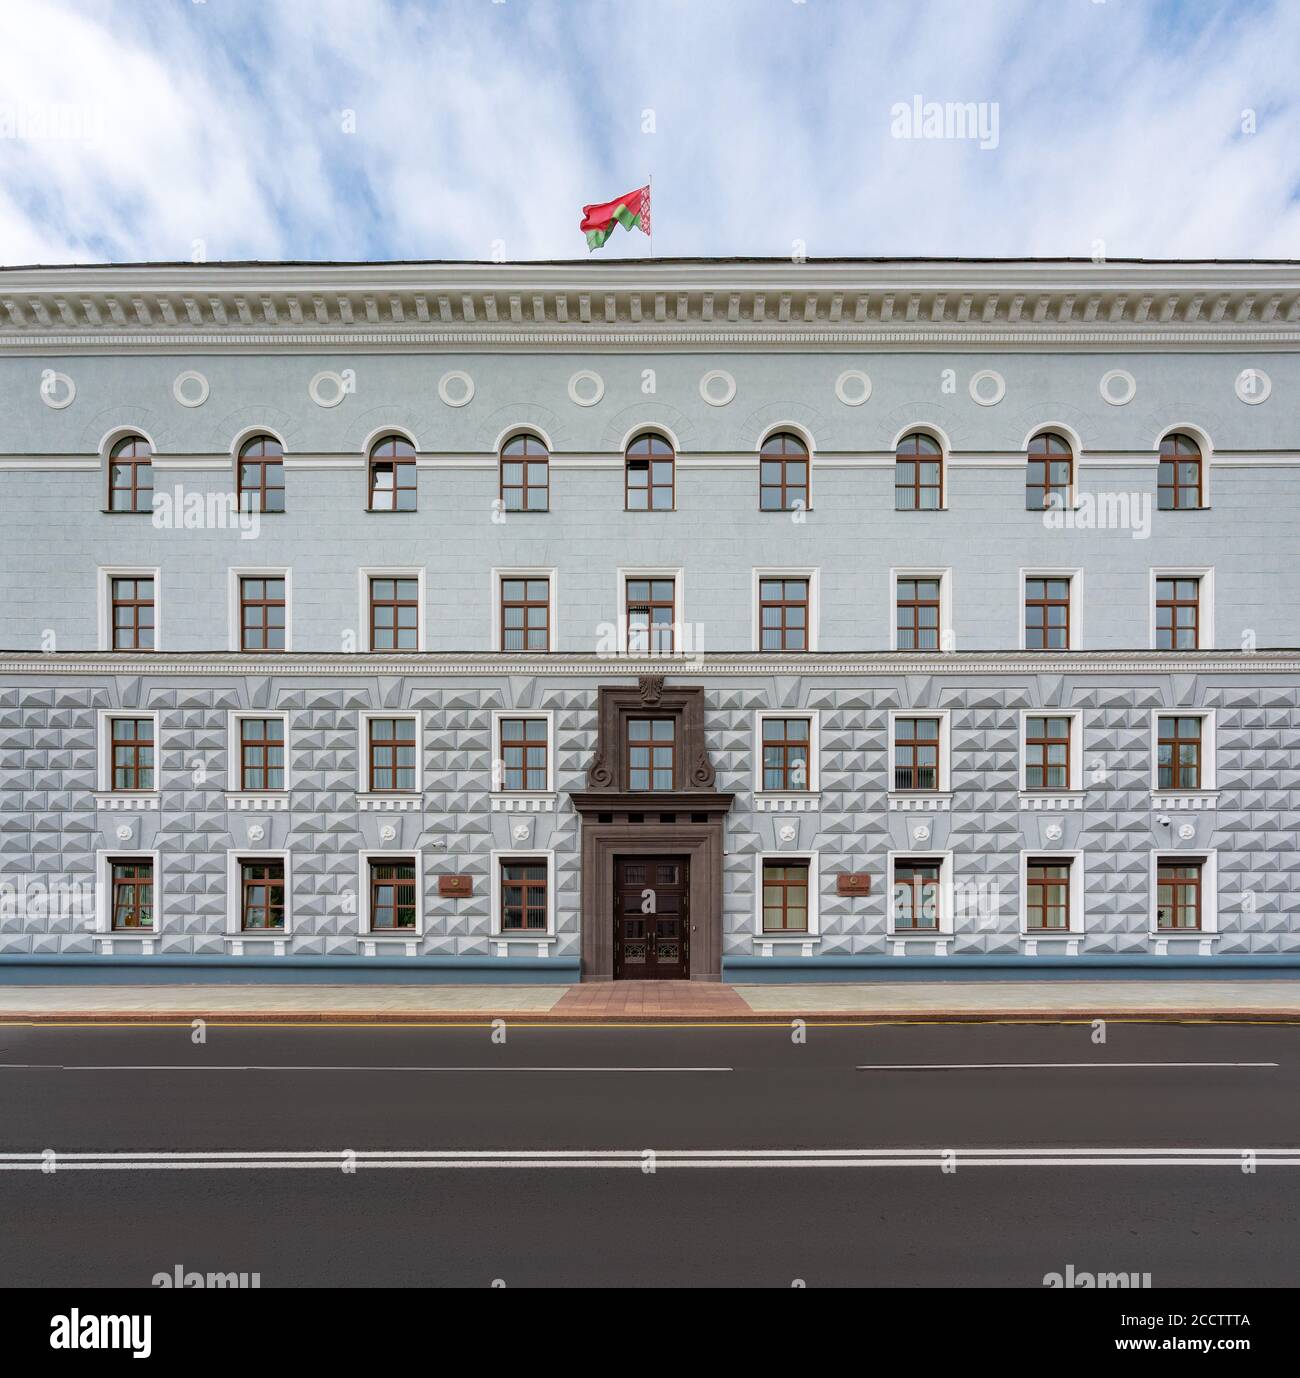 Verfassungsgericht der Republik Belarus - Minsk, Belarus Stockfoto